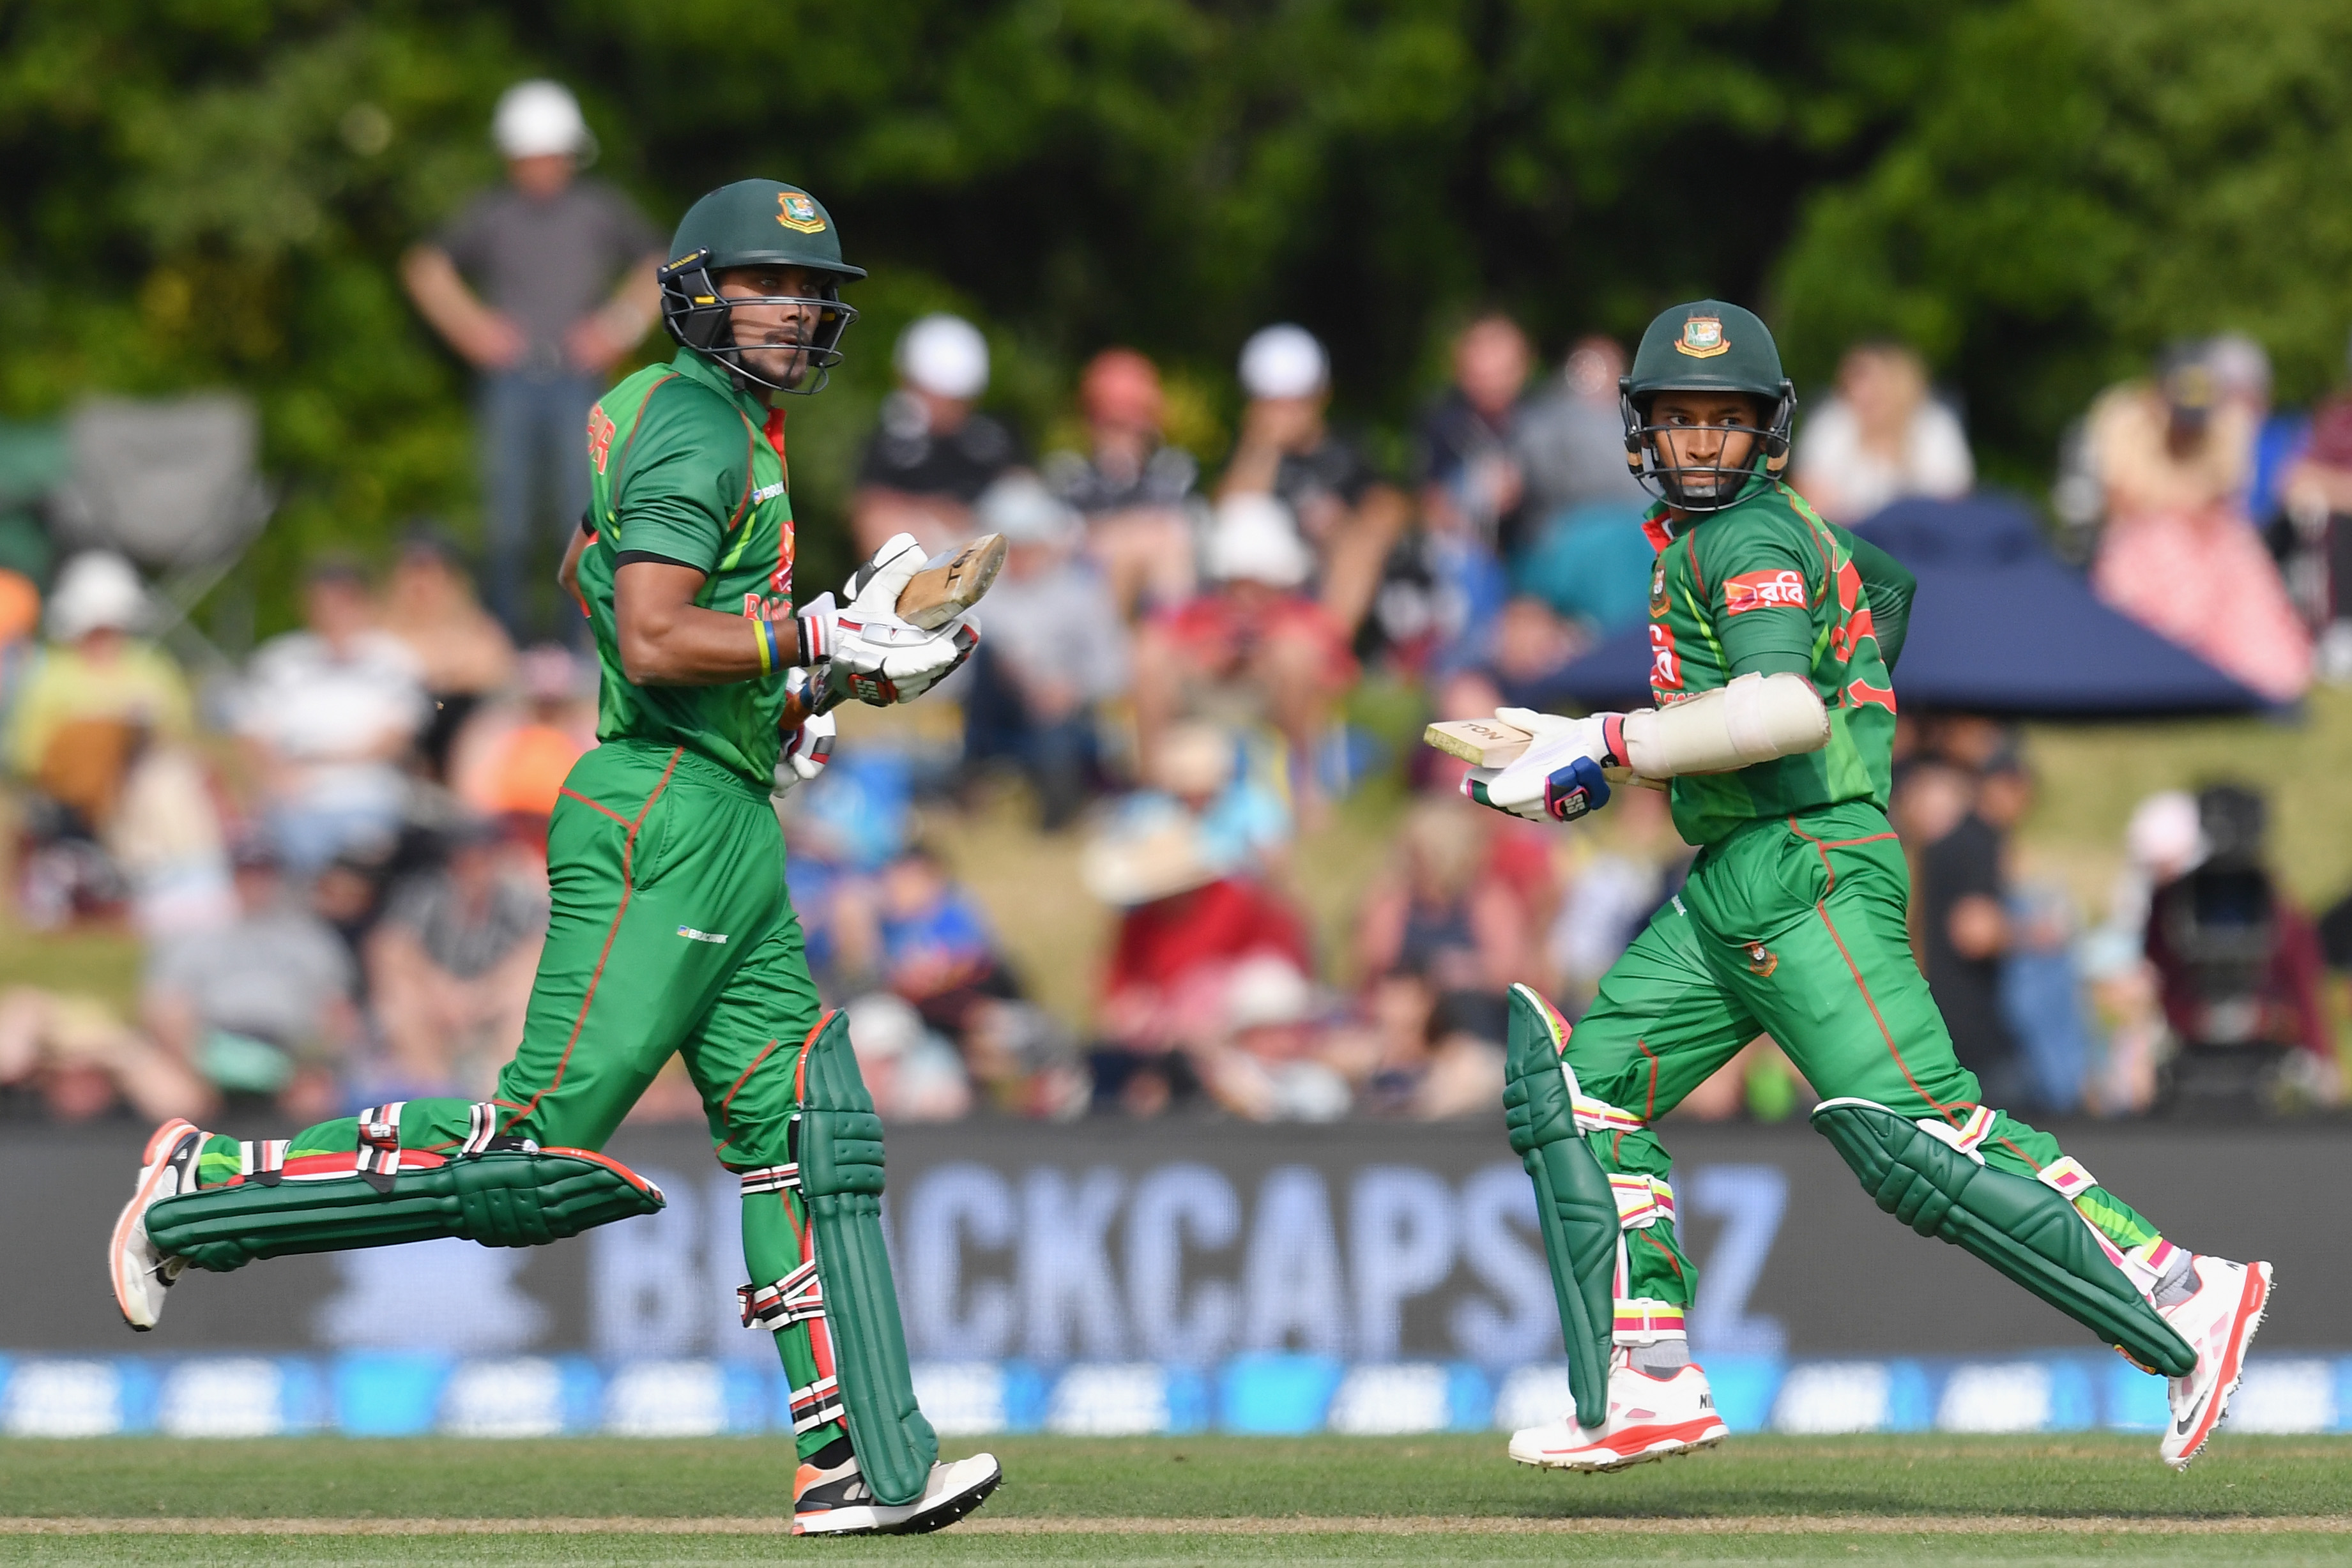 New Zealand v Bangladesh | Imrul Kayes and Sabbir Rahman produce the most comical run-out